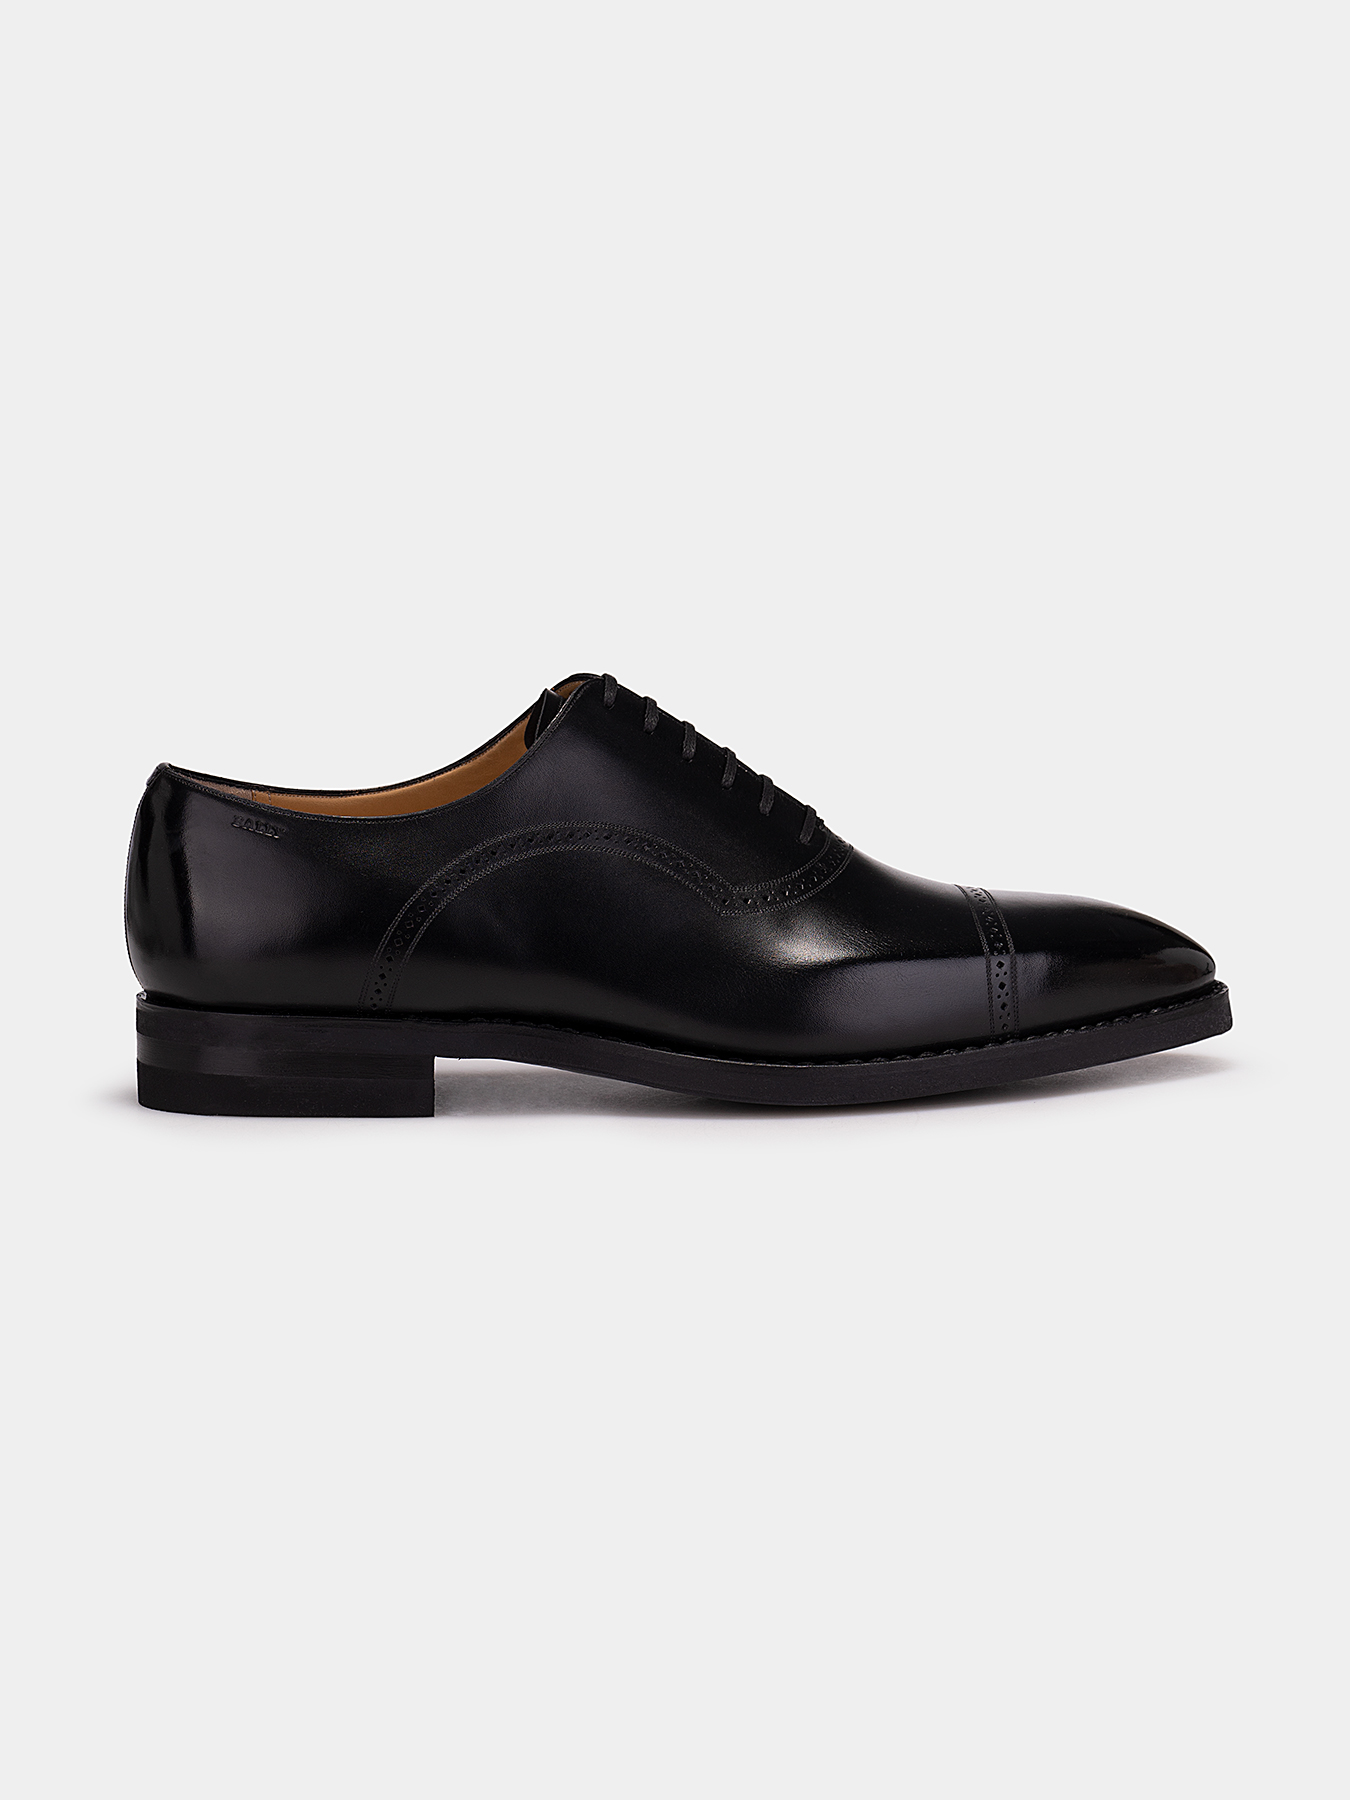 SCOTCH leather Oxford shoes brand BALLY — /en